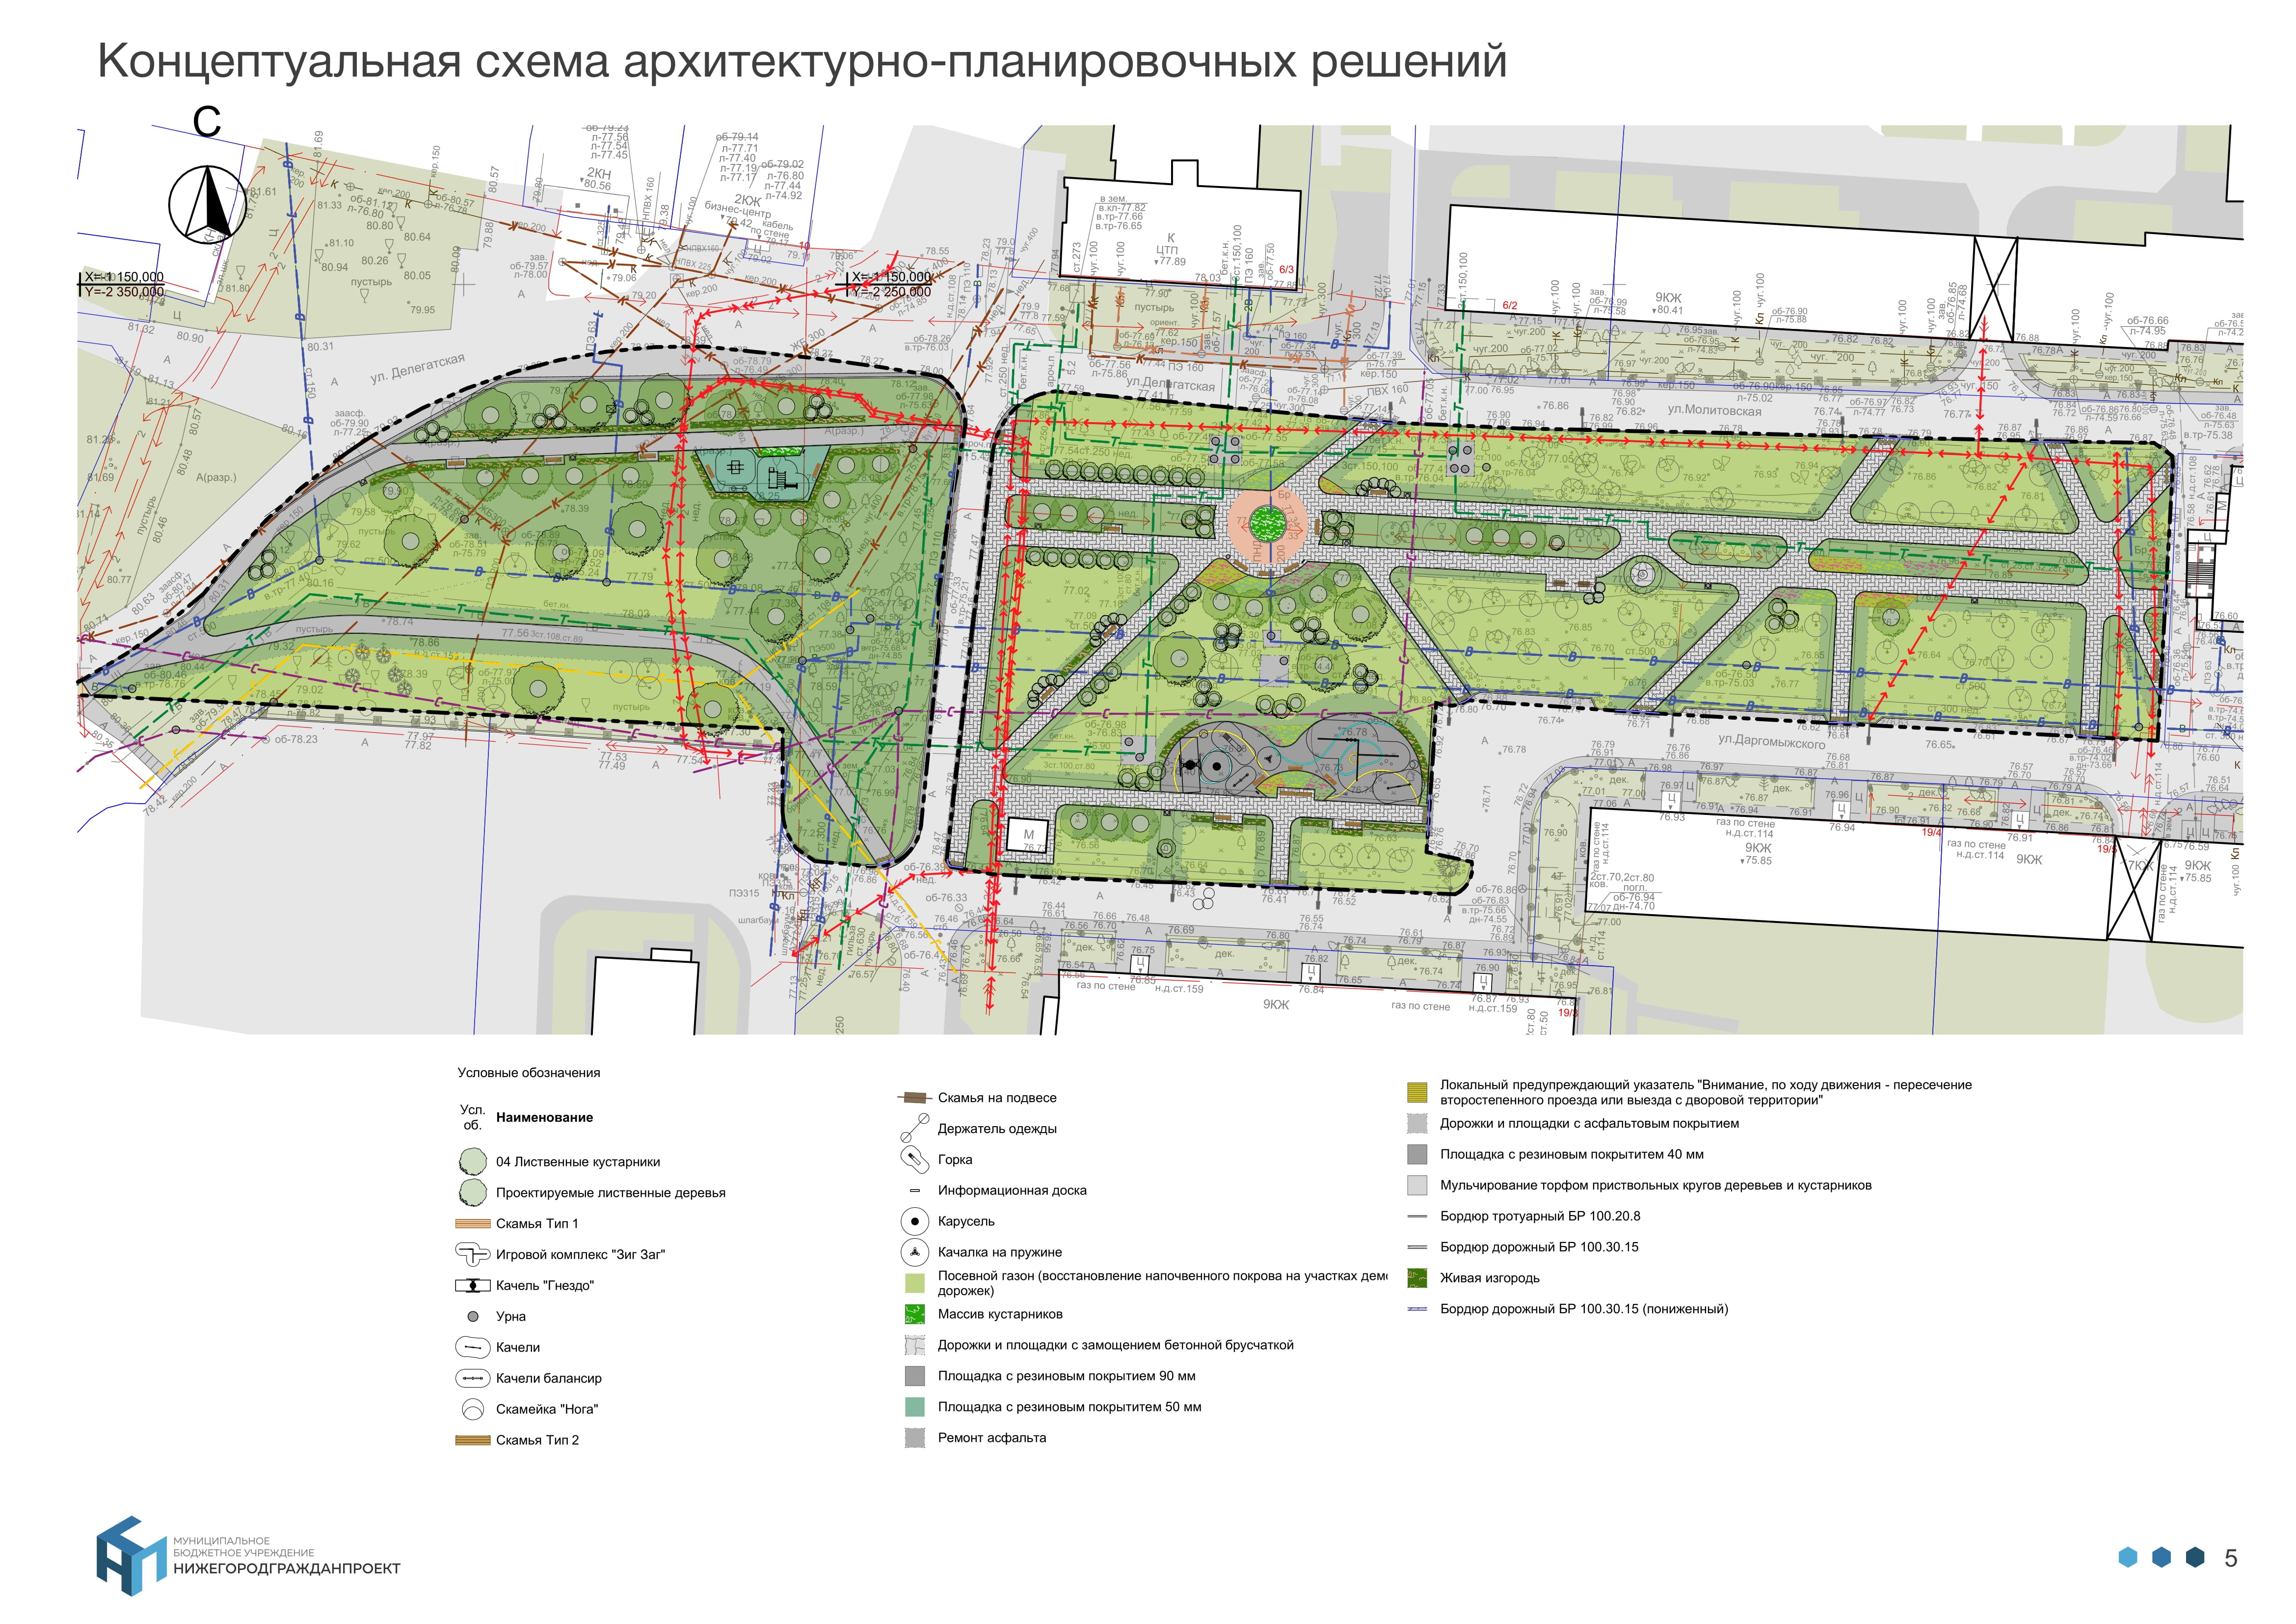 Горки, лавки и деревья: что ждет общественные пространства Нижнего Новгорода в 2022 году 